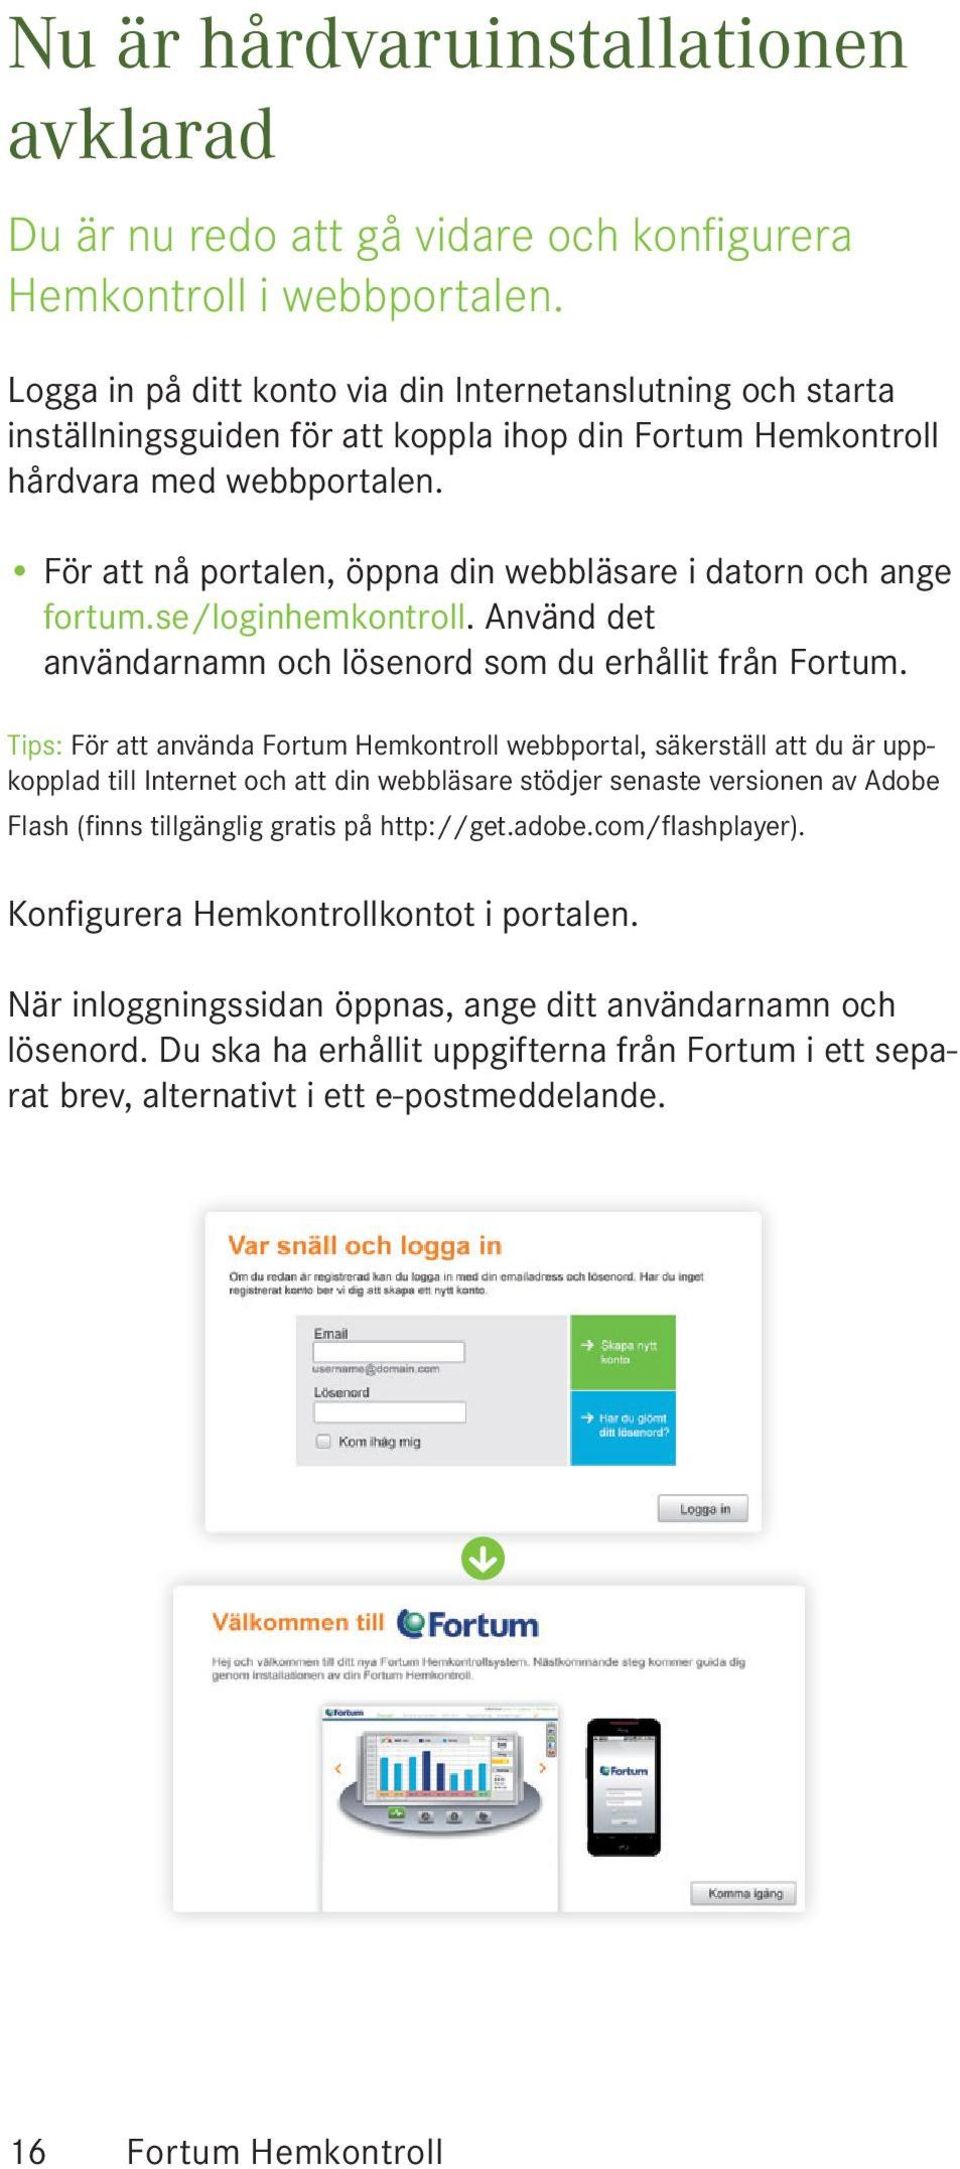 För att nå portalen, öppna din webbläsare i datorn och ange fortum.se/loginhemkontroll. Använd det användarnamn och lösenord som du erhållit från Fortum.